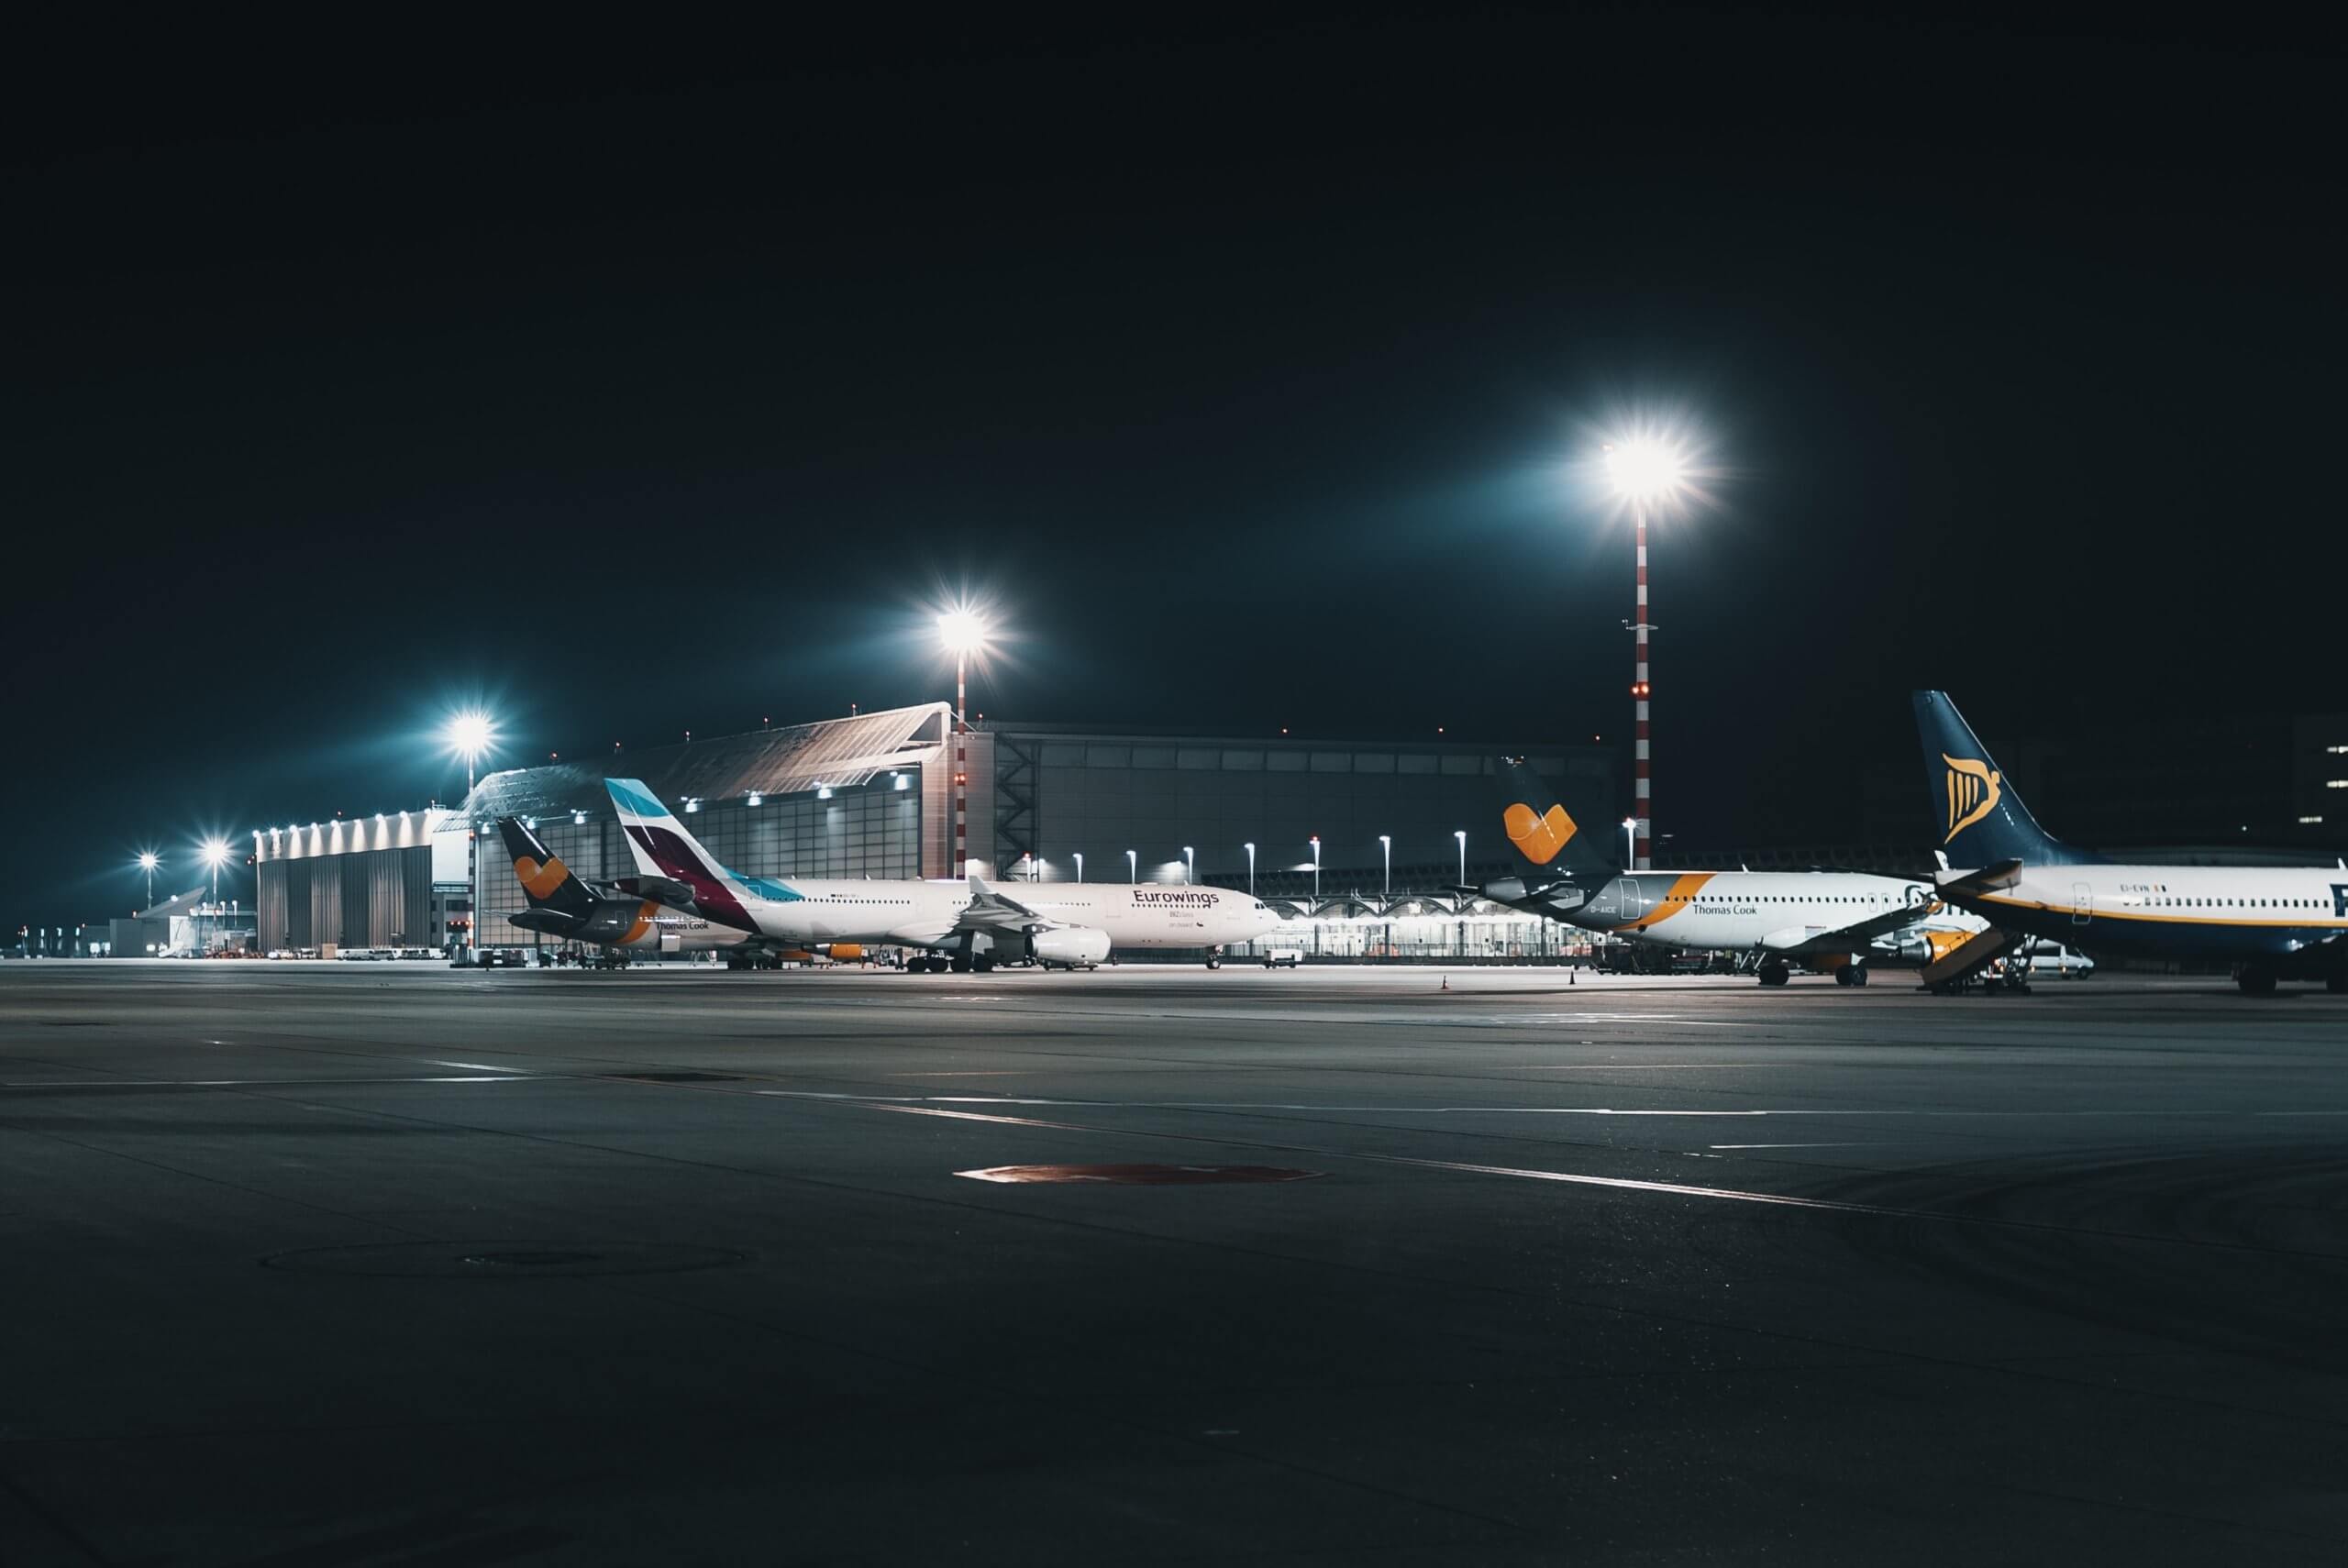 Small airport at night